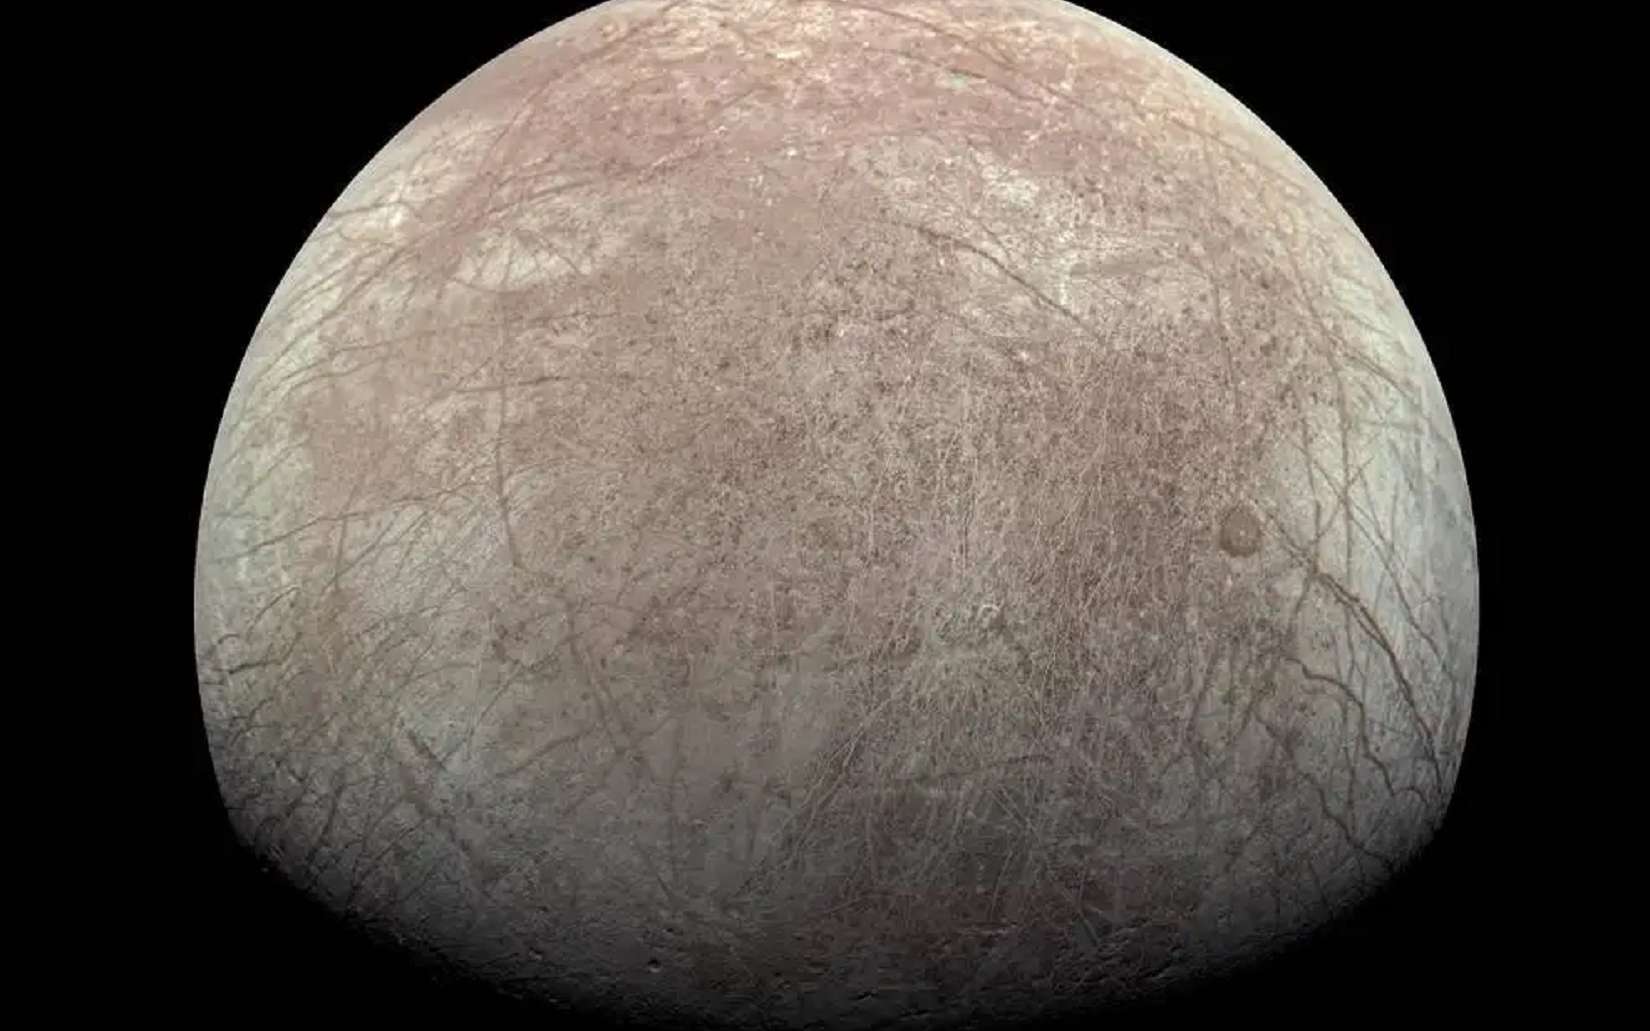 L'océan d'Europe, la lune de Jupiter, contient-il de l'oxygène pour la vie ?